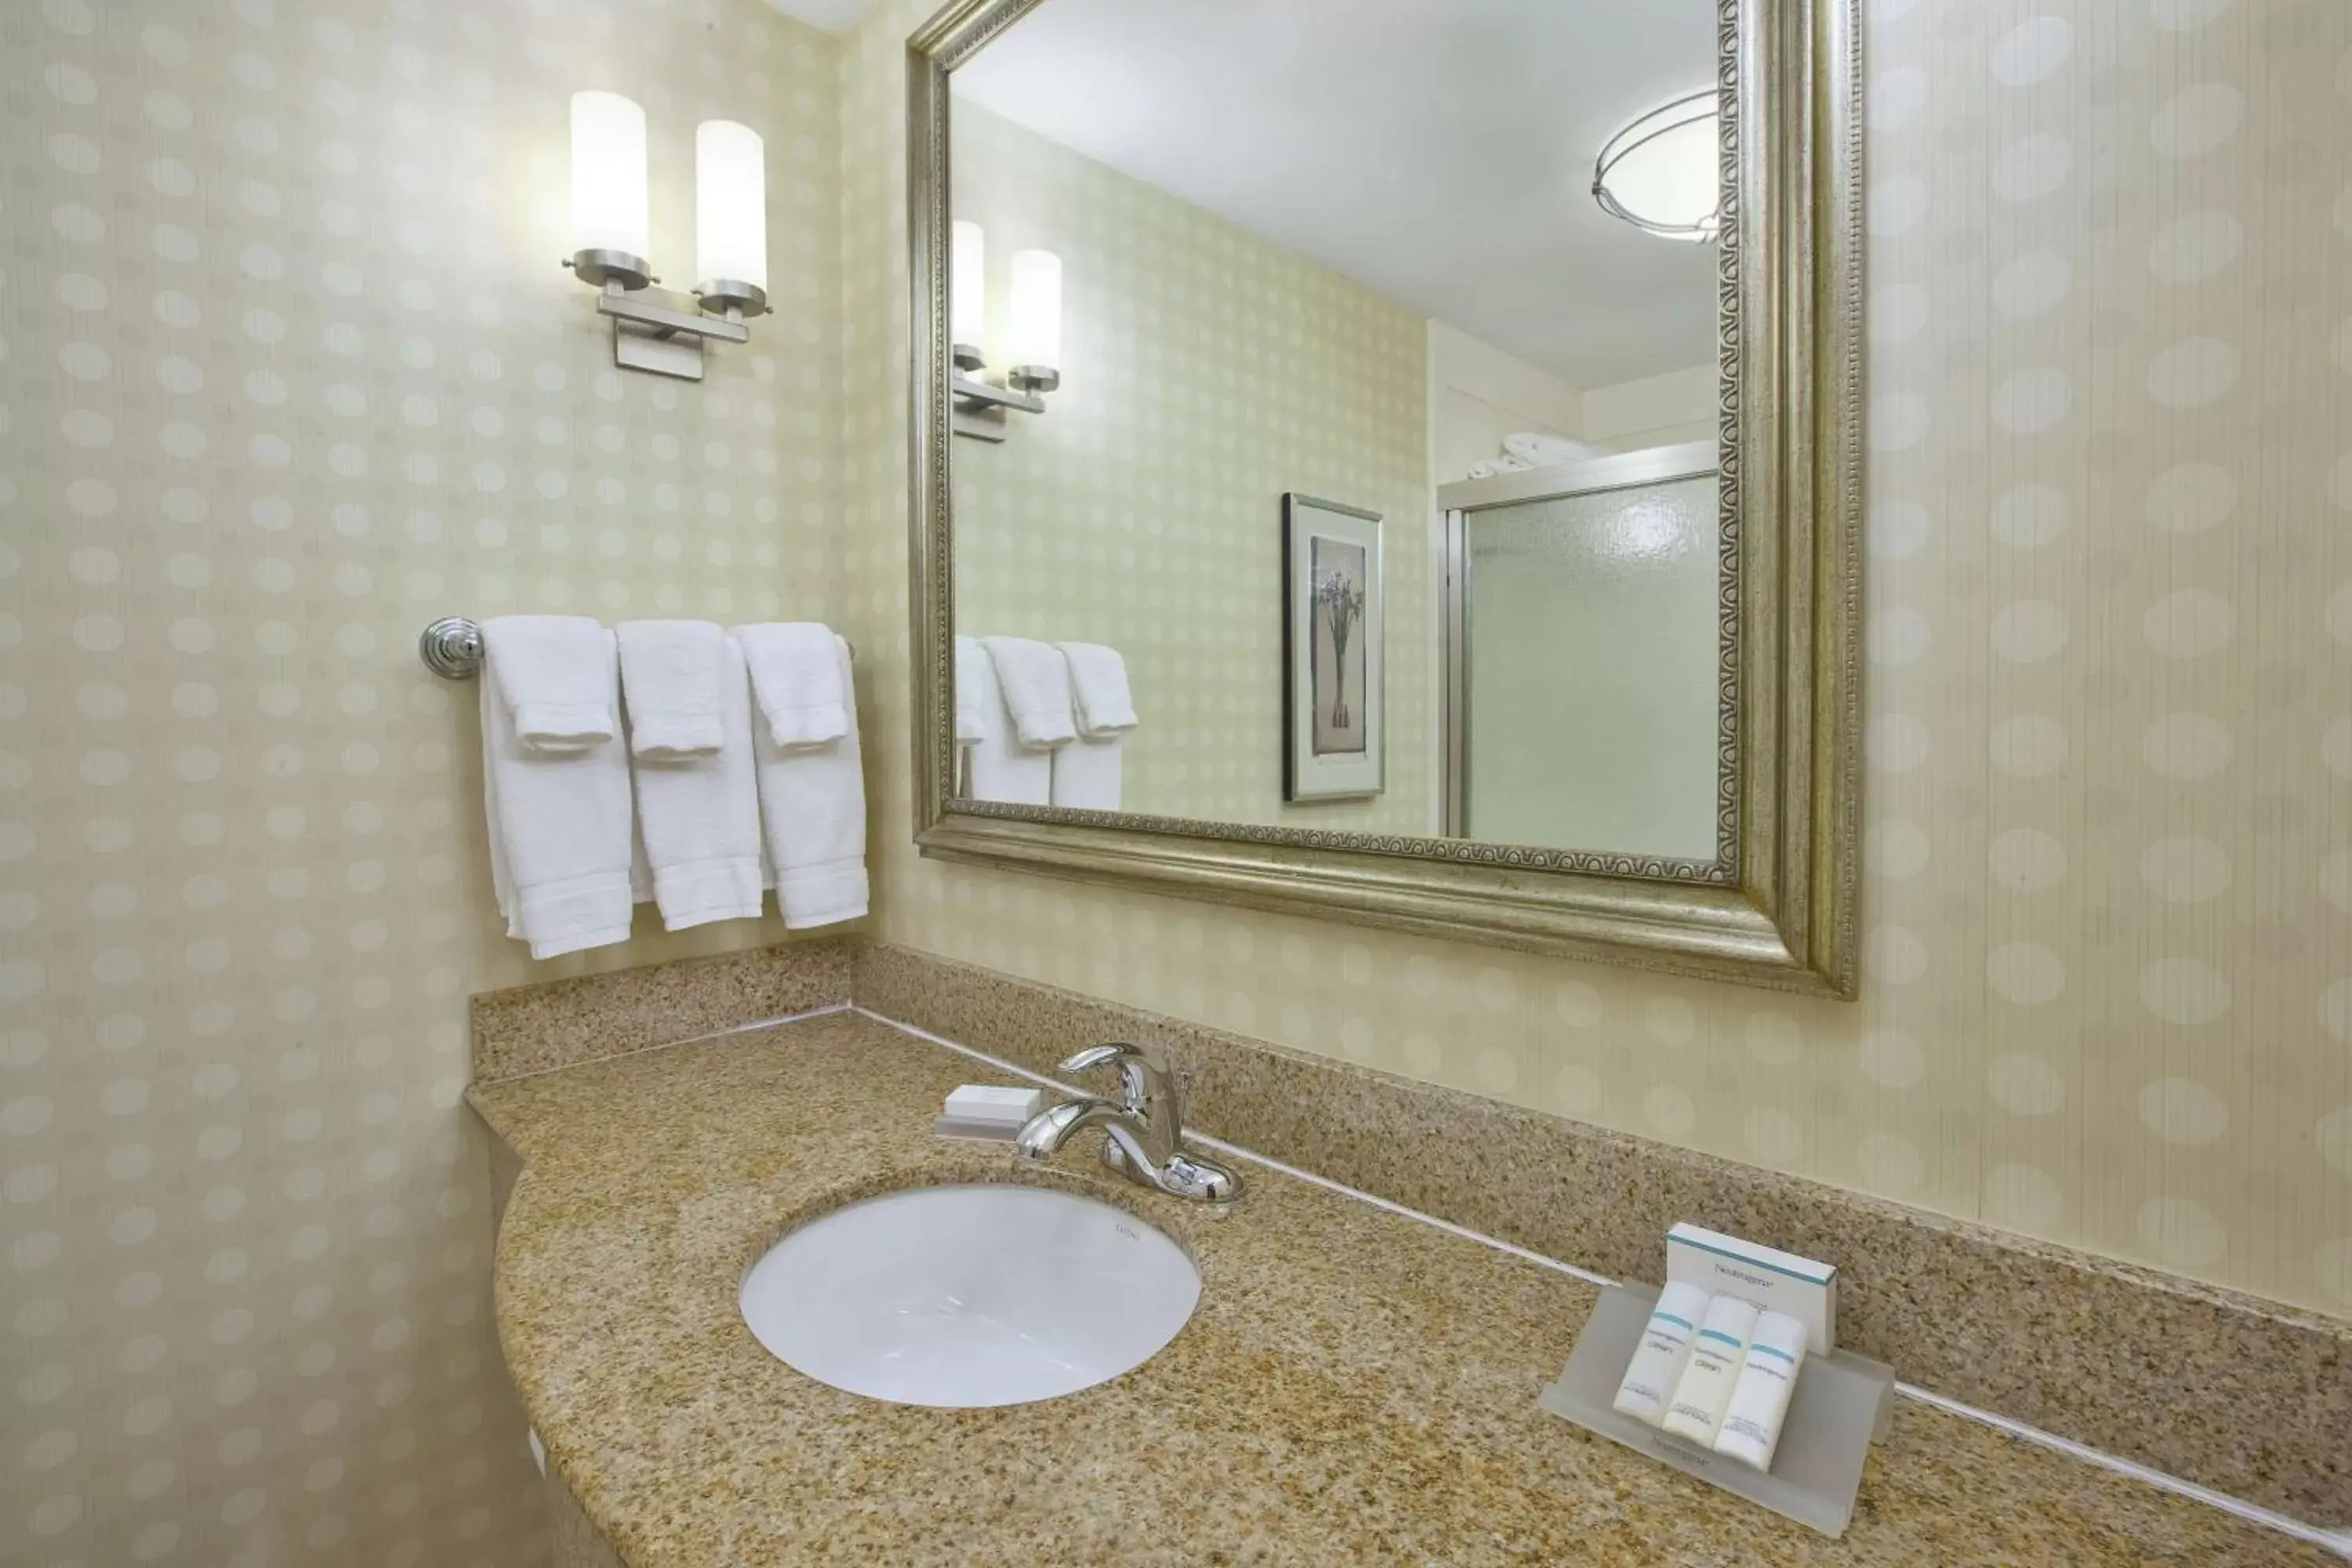 Bathroom in Hilton Garden Inn Clarksburg